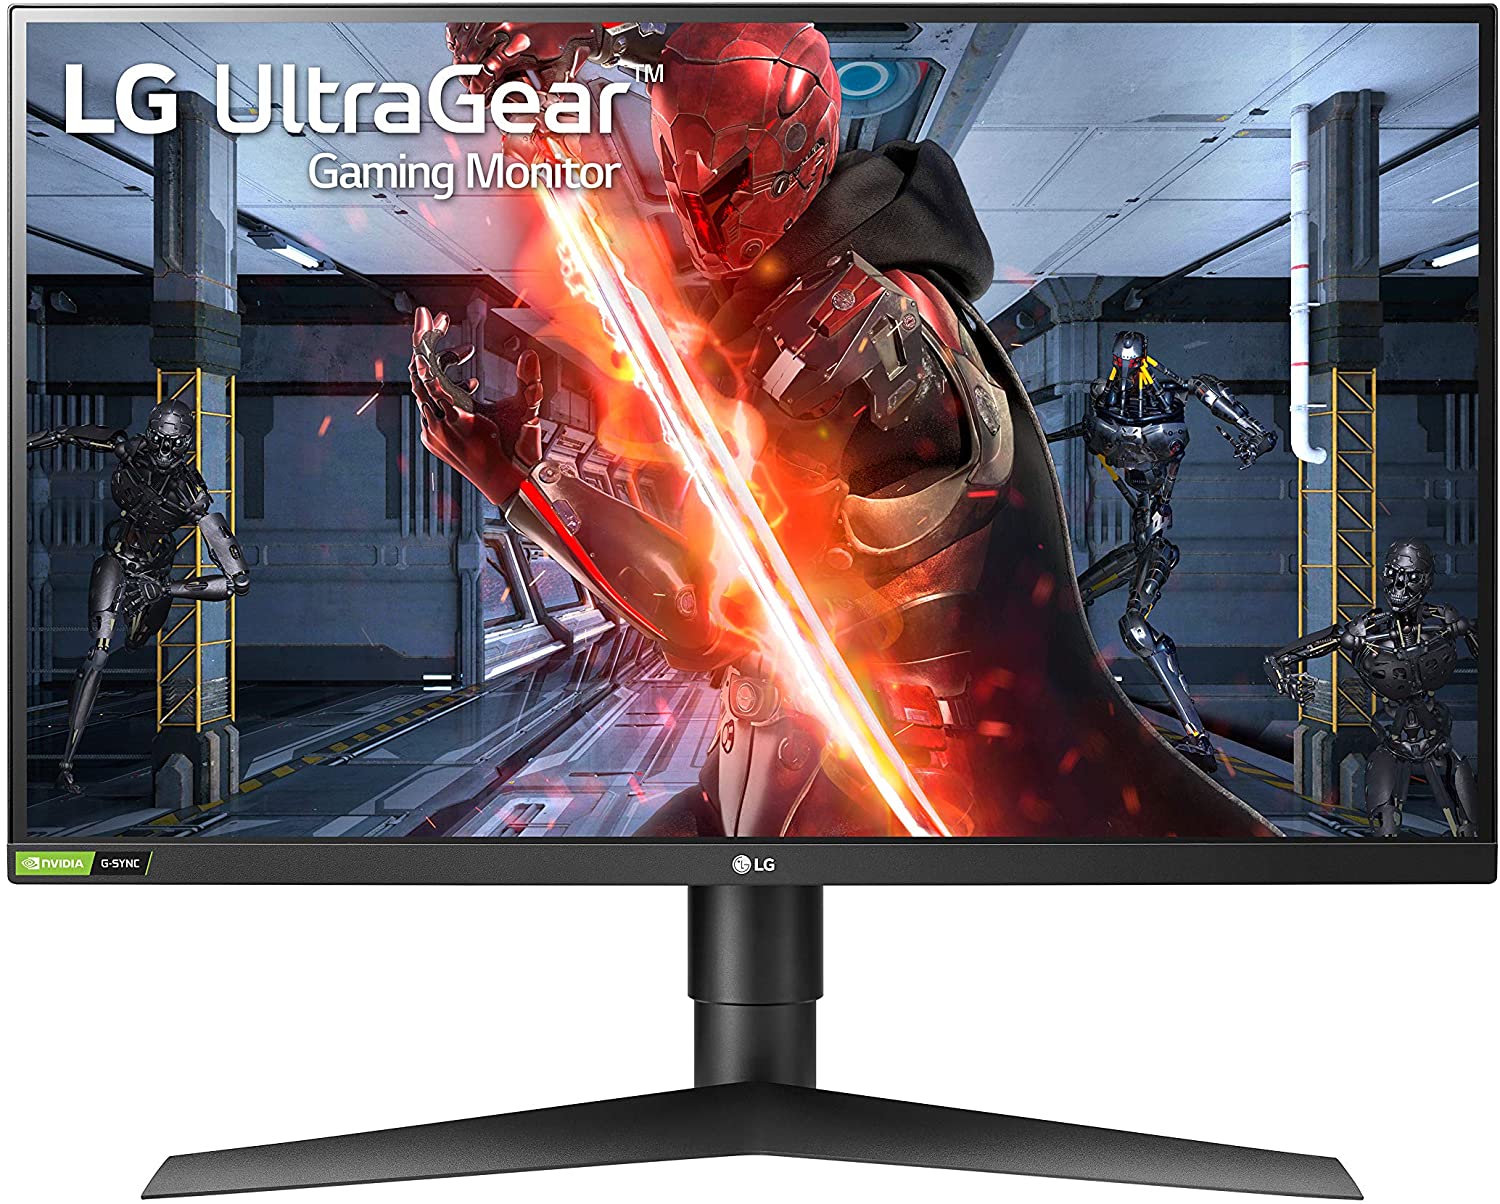 LG ultra gaming monitor